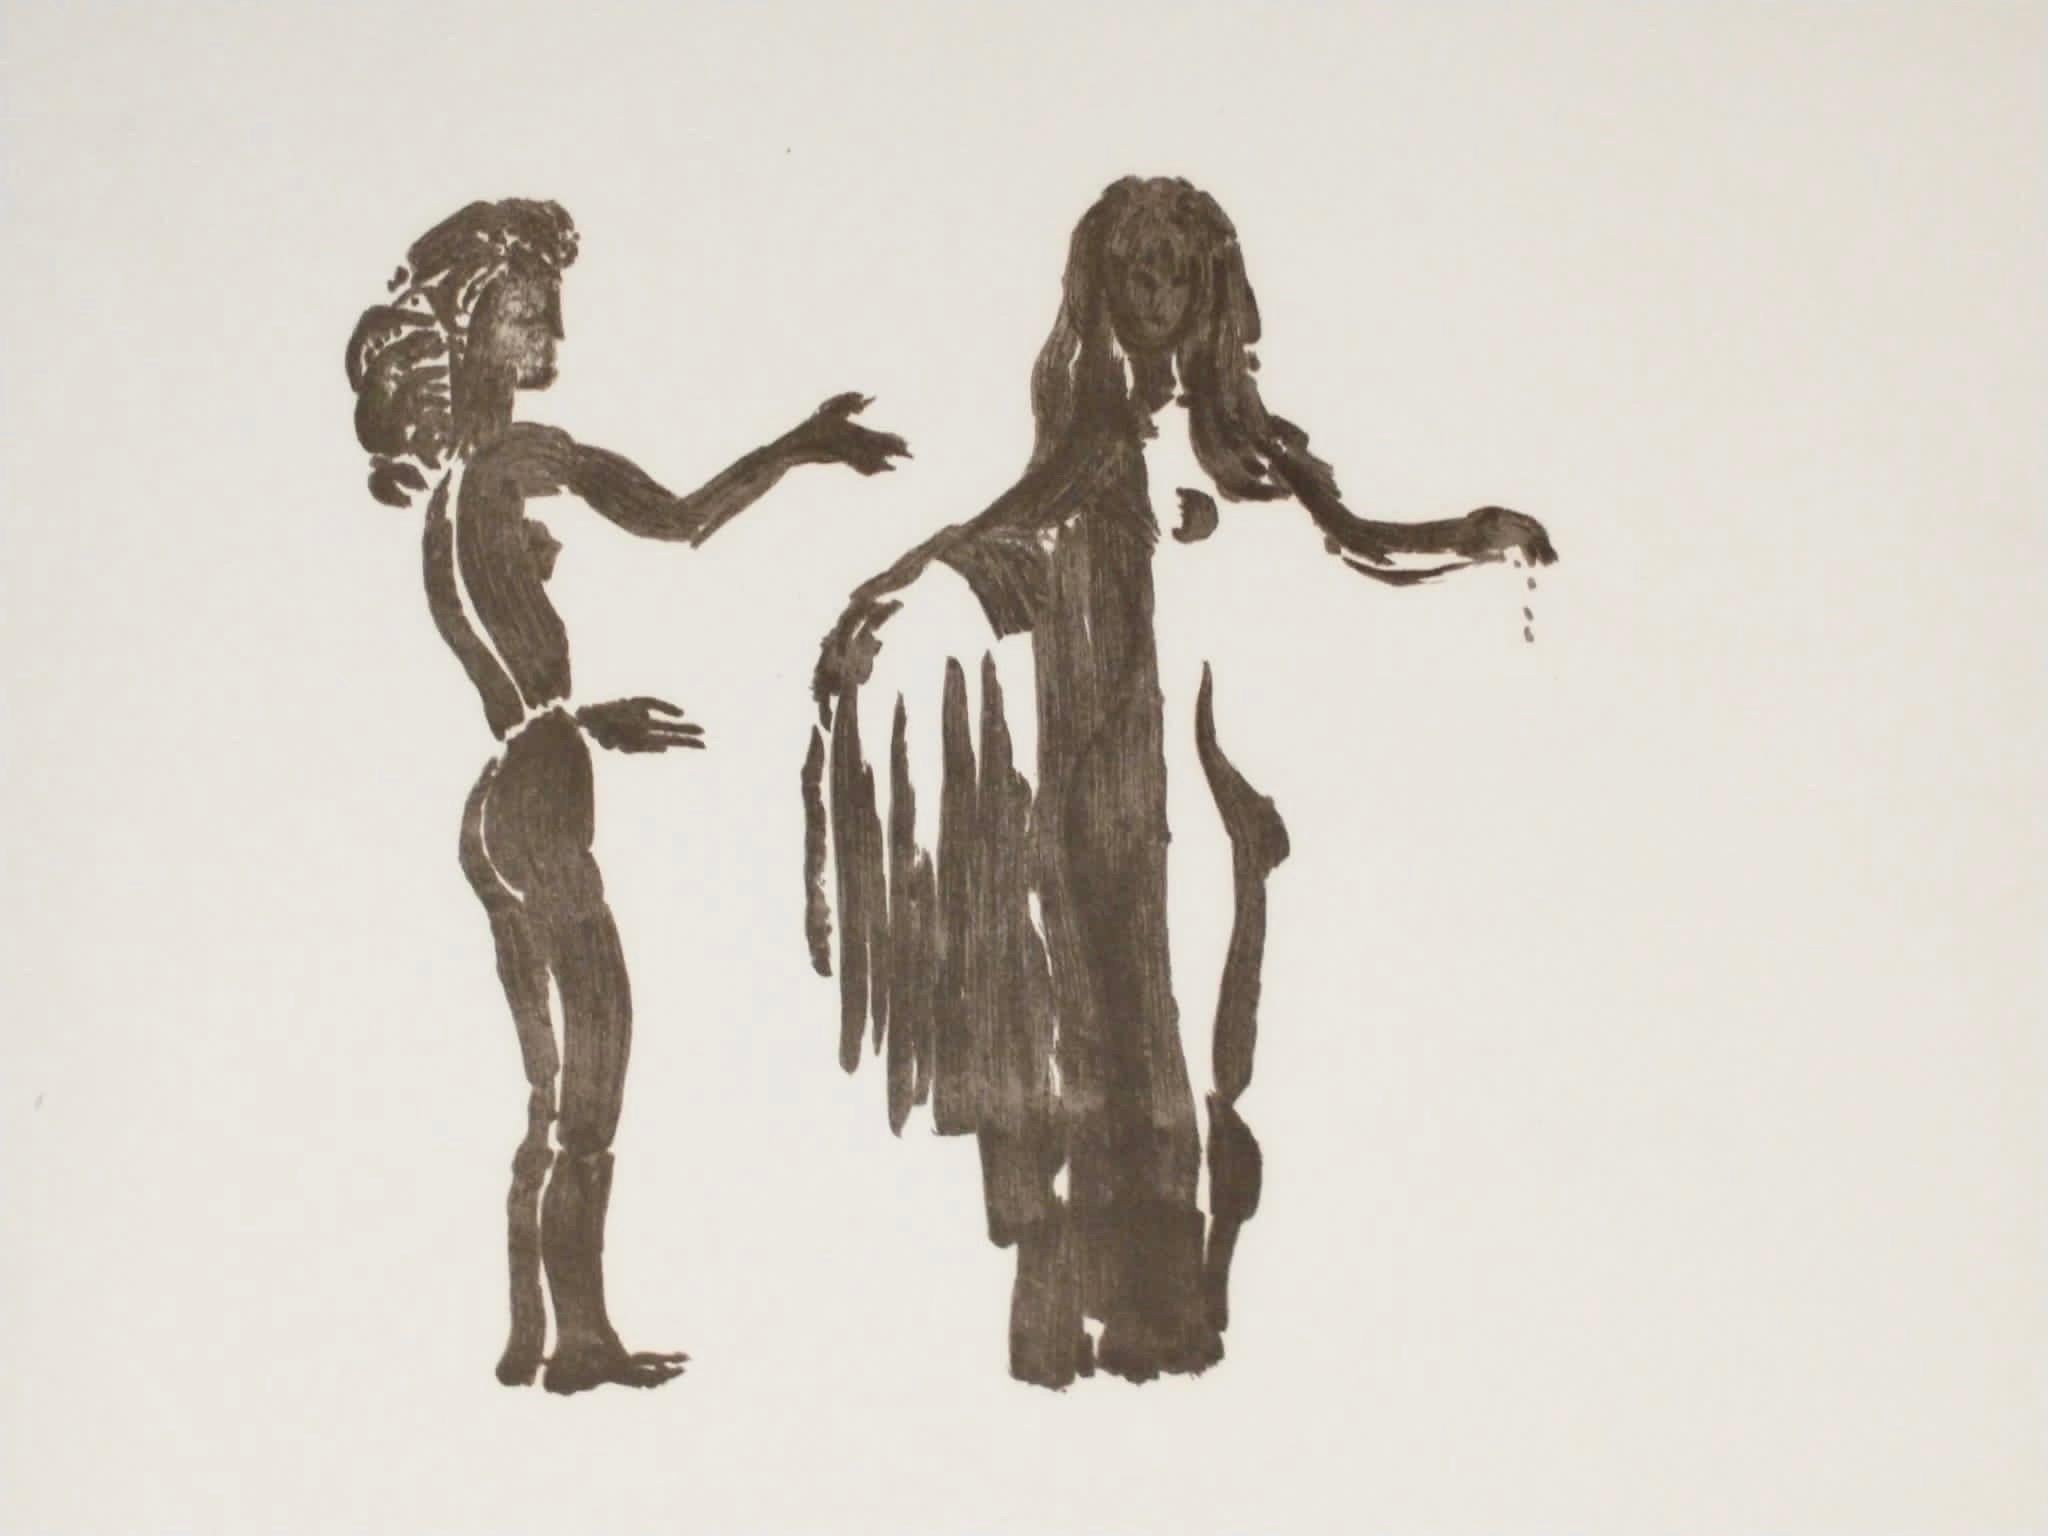 Nude Print Apelles Fenosa - Apeles Fenosa, sculpteur espagnol Mourlot, lithographie - Figures expressionnistes abstraites